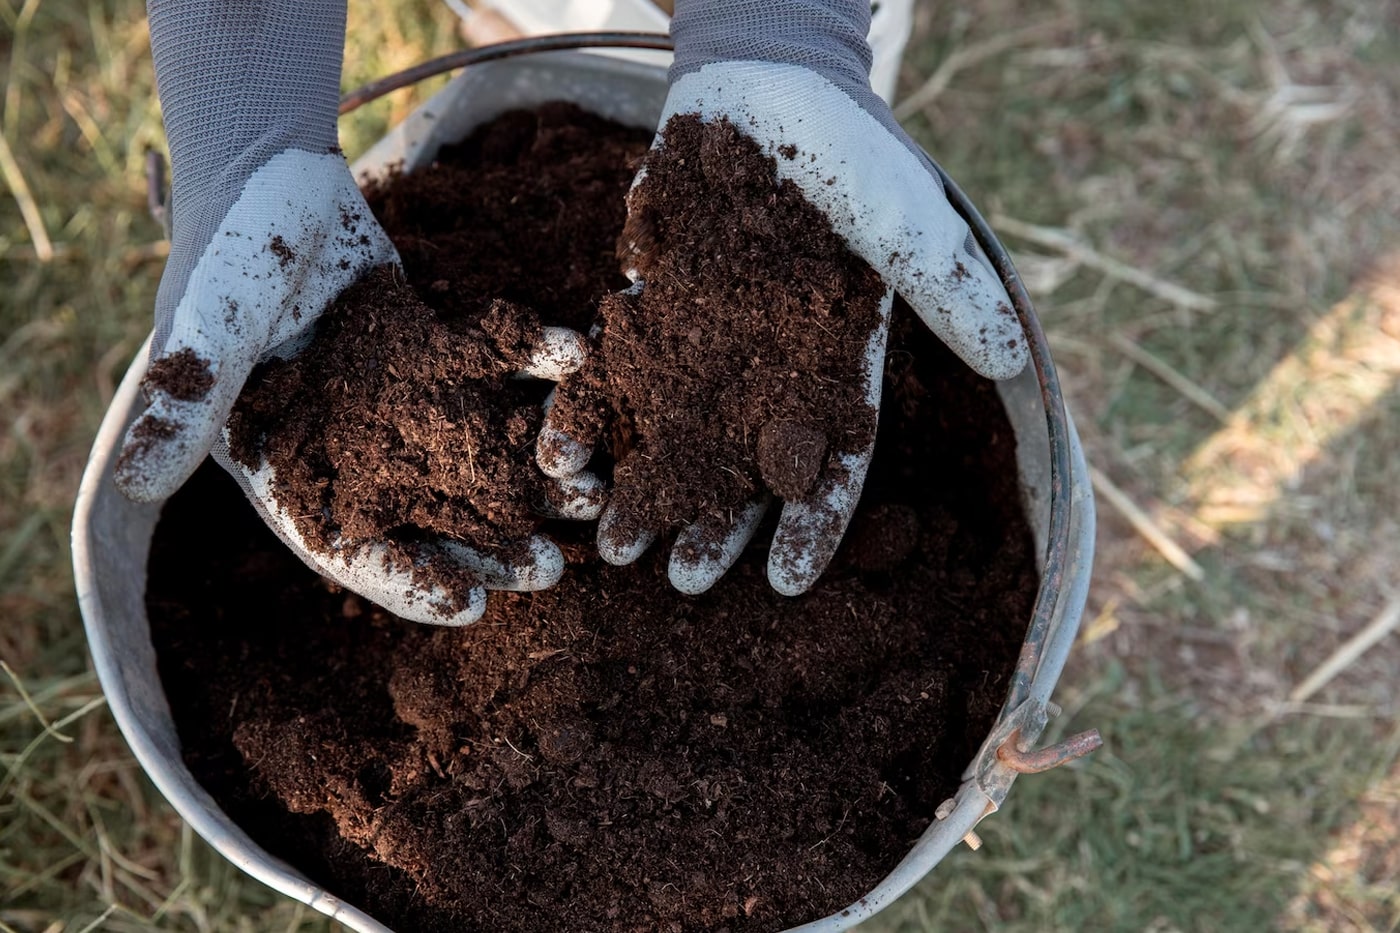 hands holid soil